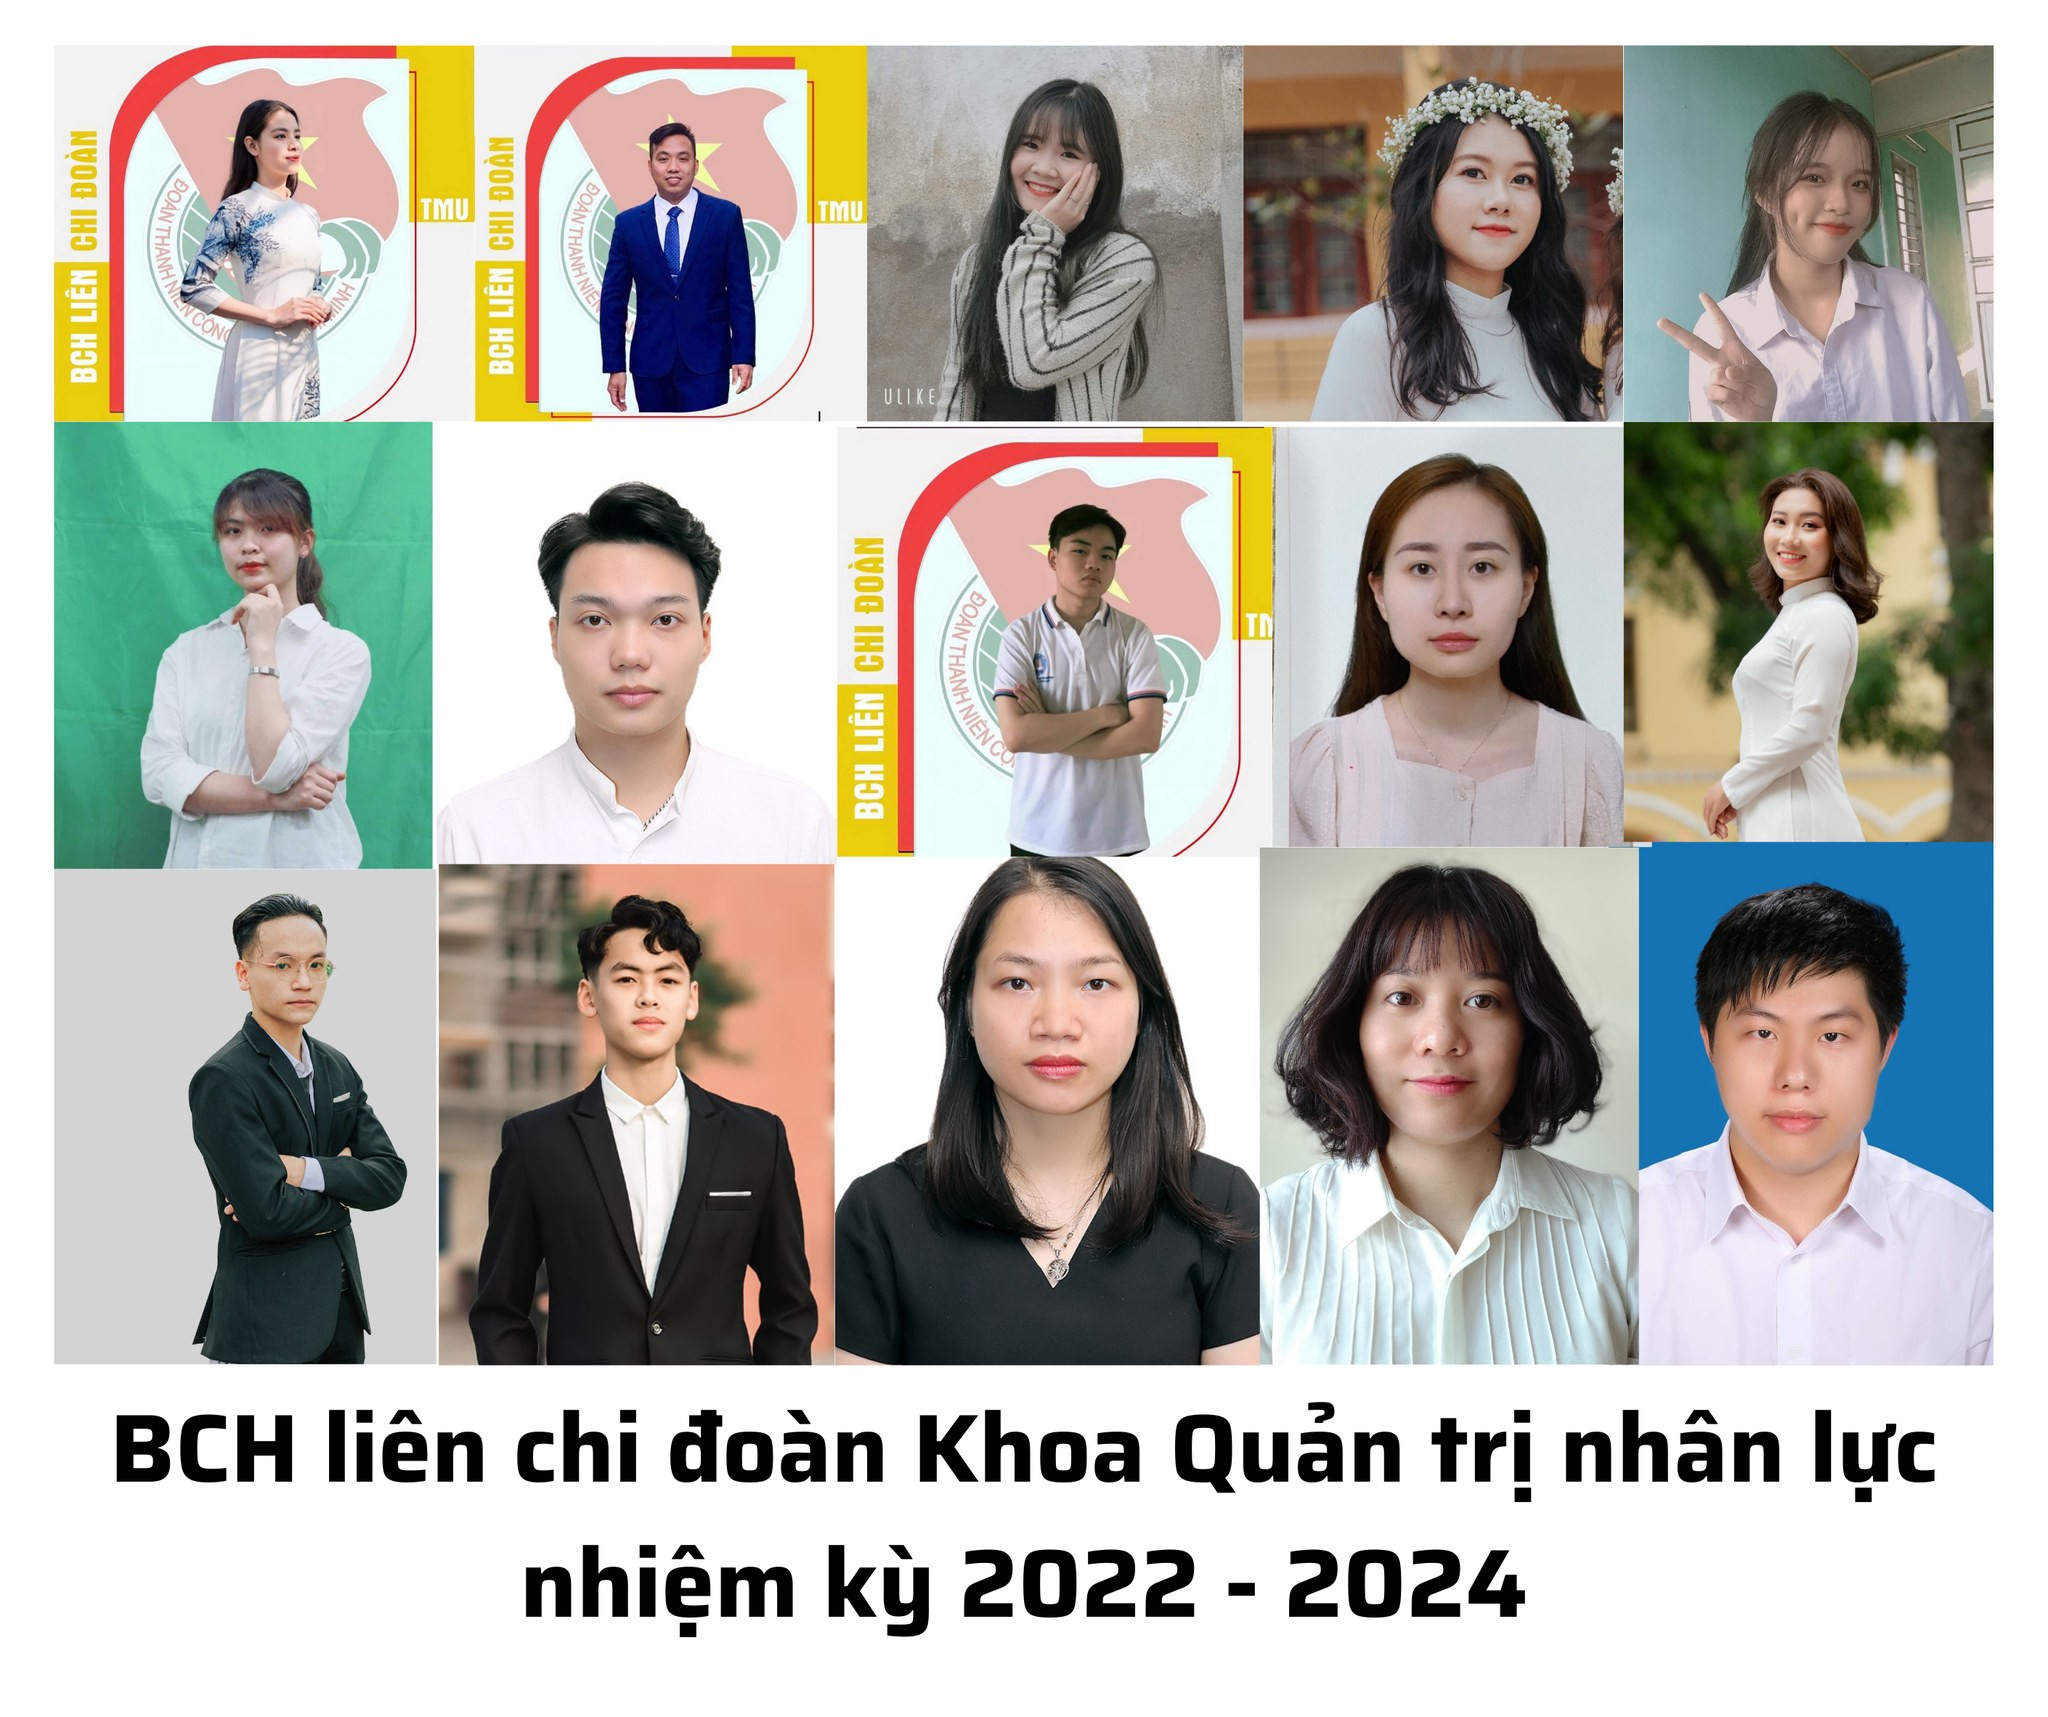 LIÊN CHI ĐOÀN KHOA QUẢN TRỊ NHÂN LỰC NHIỆM KỲ 2022-2024: Sức trẻ vươn lên, Liên chi Đoàn tiến bước